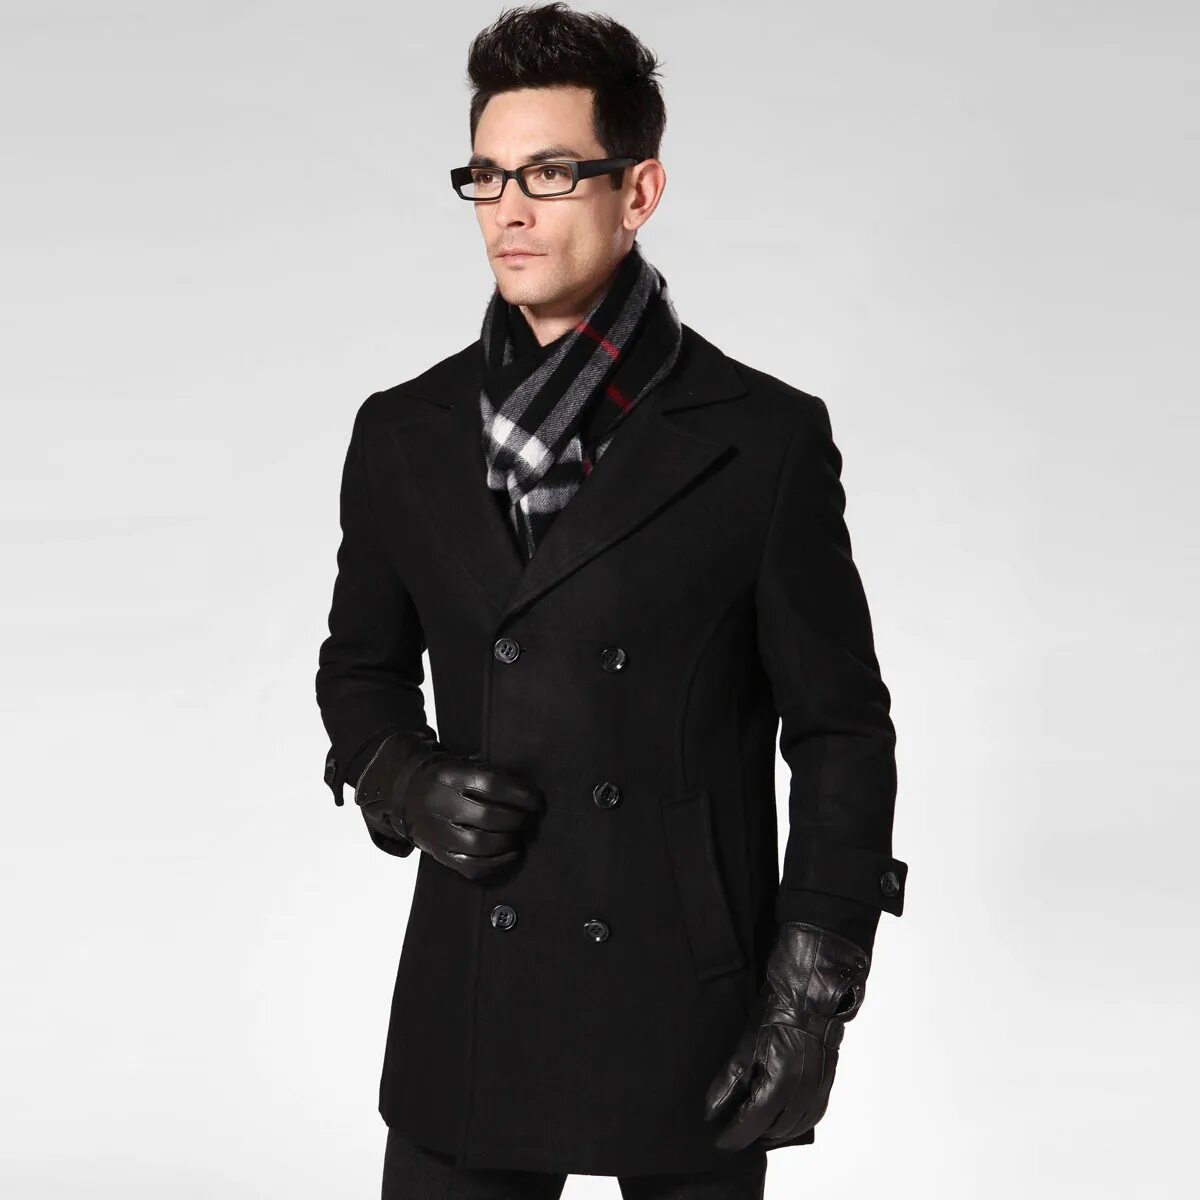 Мужское поло юс. Двубортное пальто Burton Menswear London. Черное пальто мужское. Пальто с шарфом мужское. Шарф под пальто мужское.